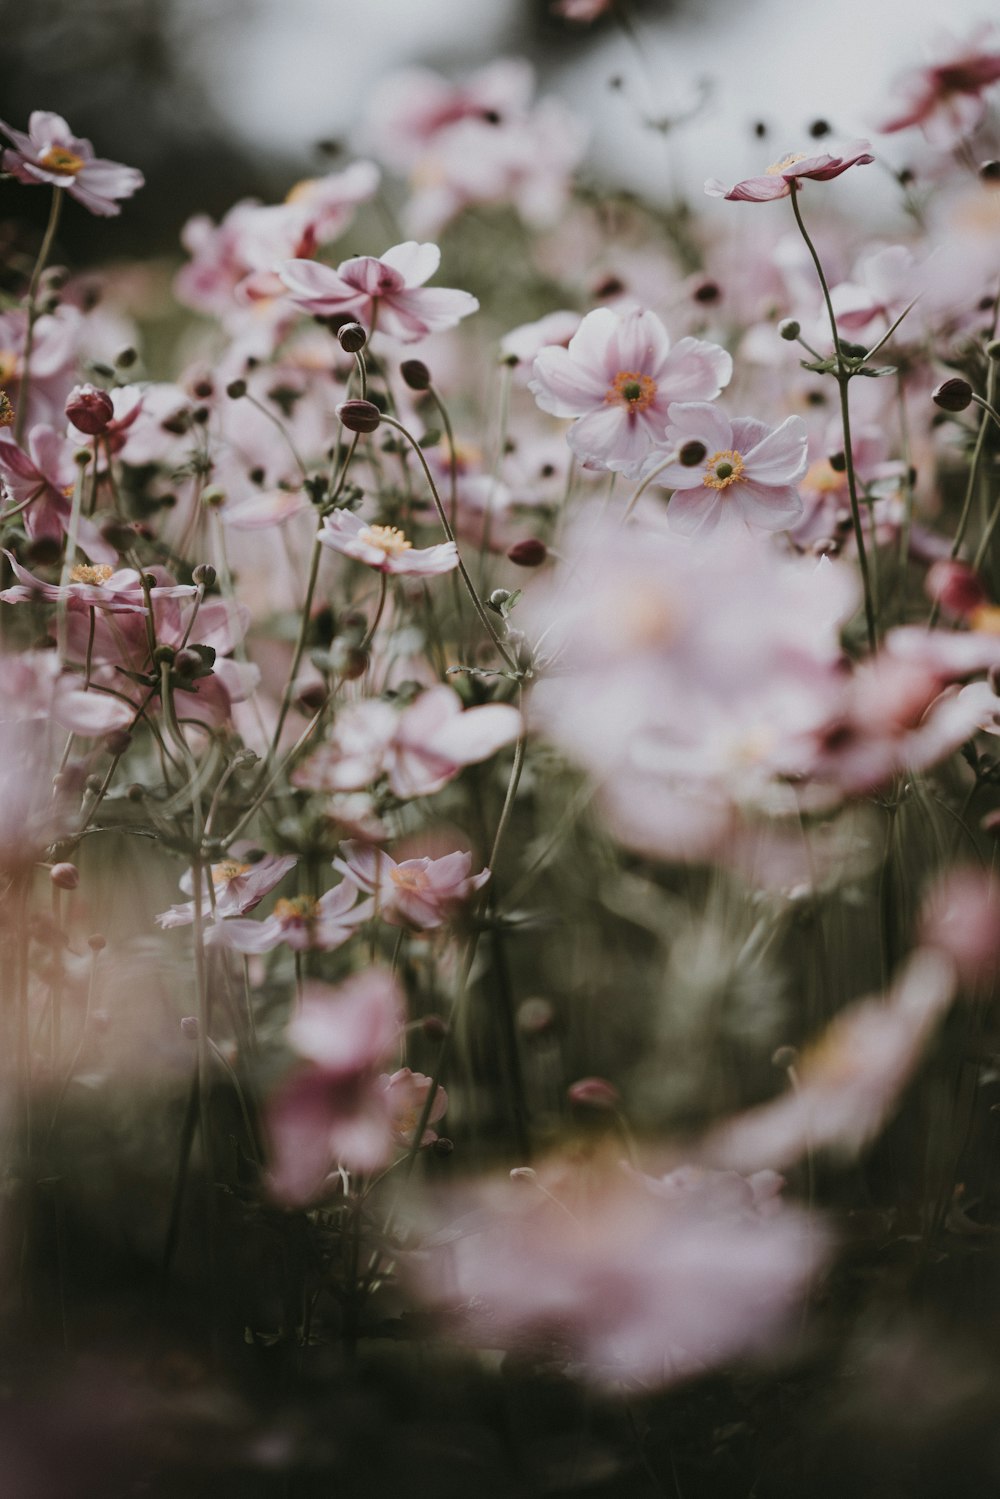 fotografia ravvicinata di fiori dai petali rosa